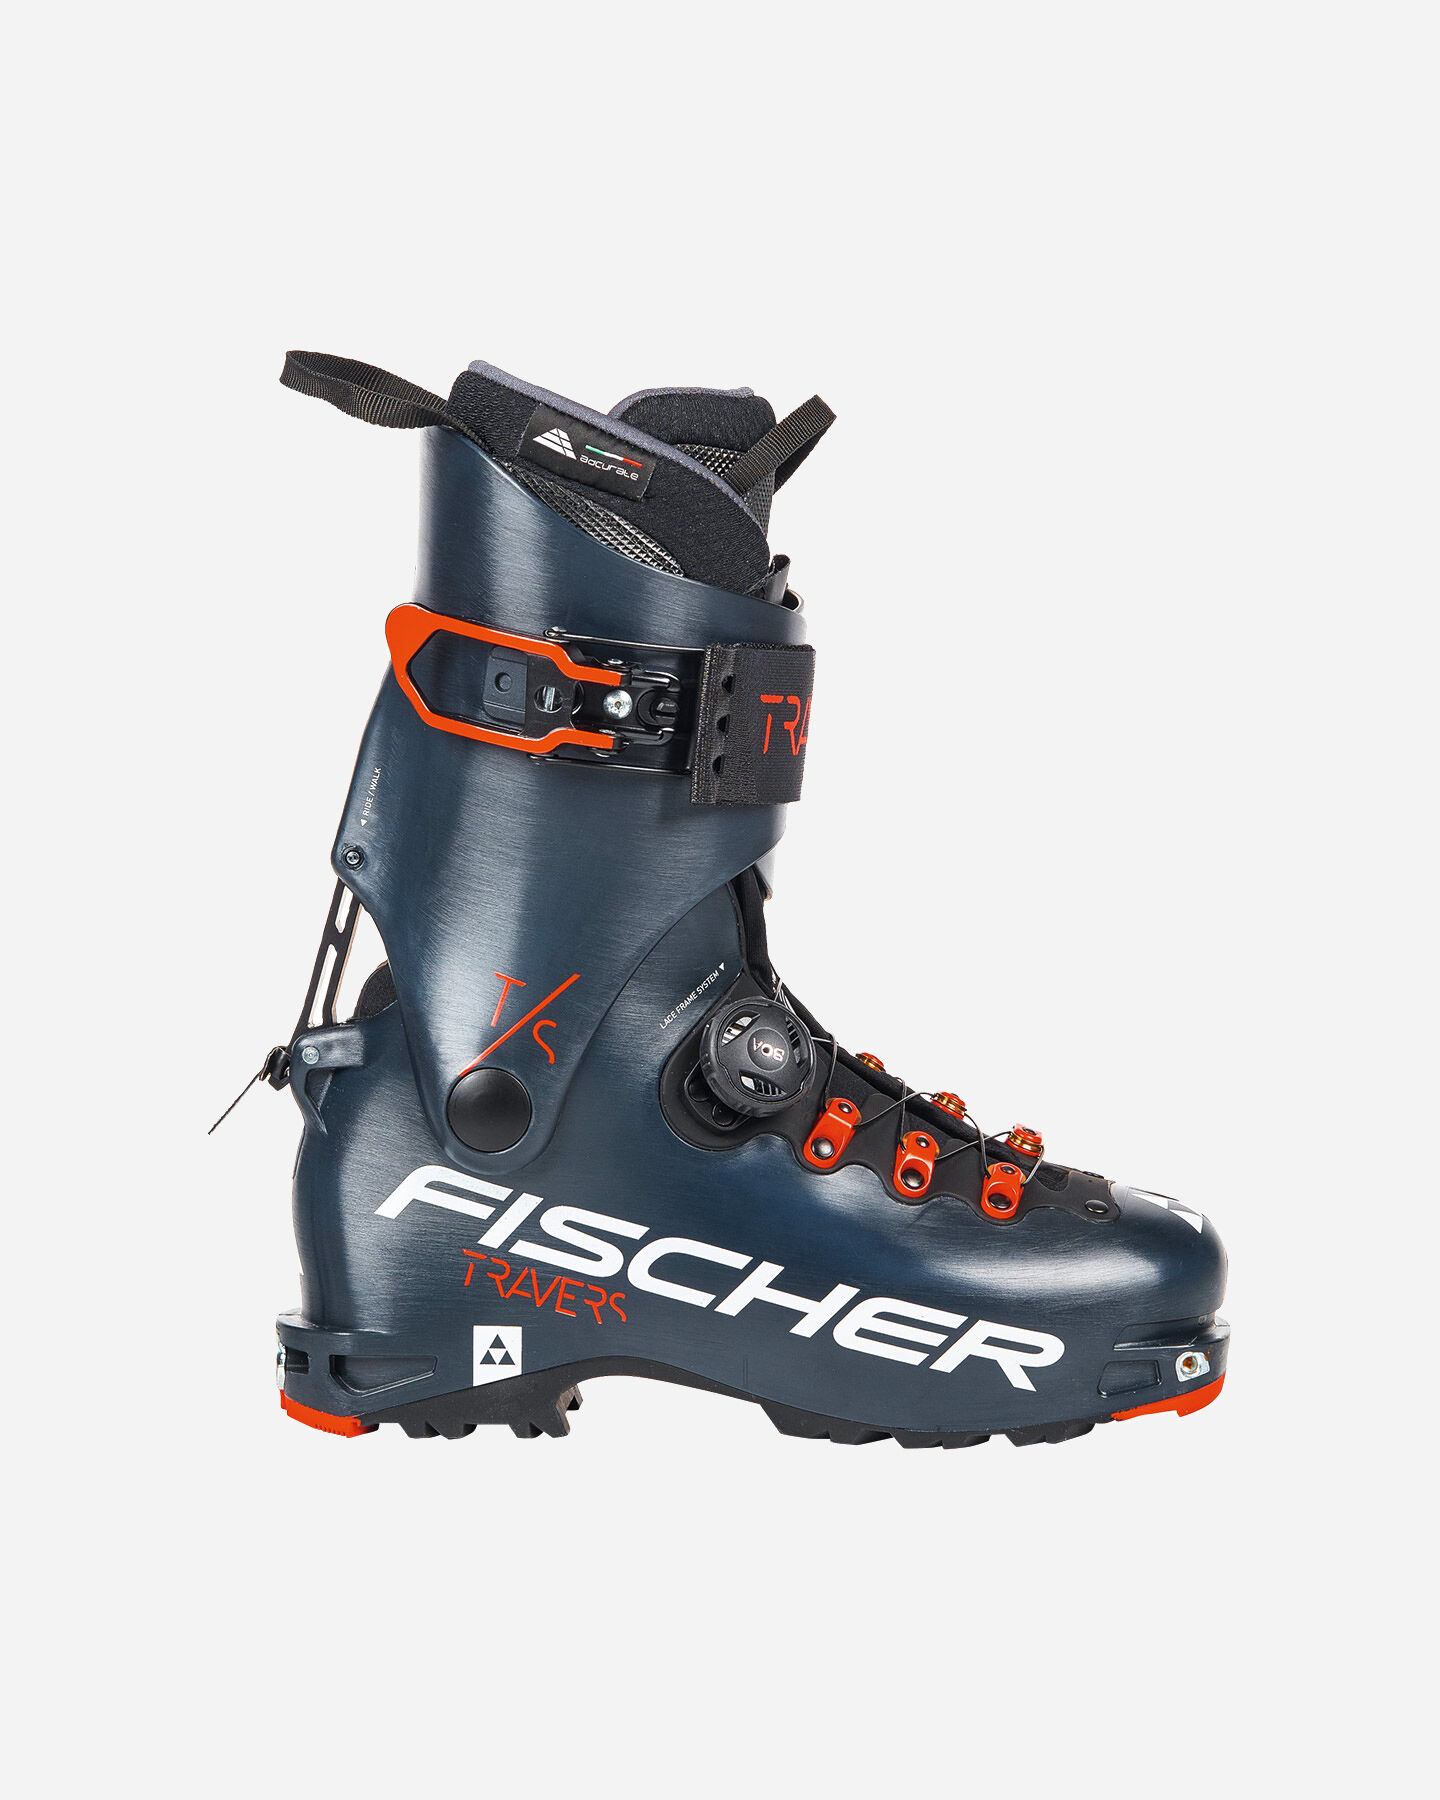  Scarponi sci alpinismo FISCHER TRAVERS TS S4092535|1|29,5 scatto 0